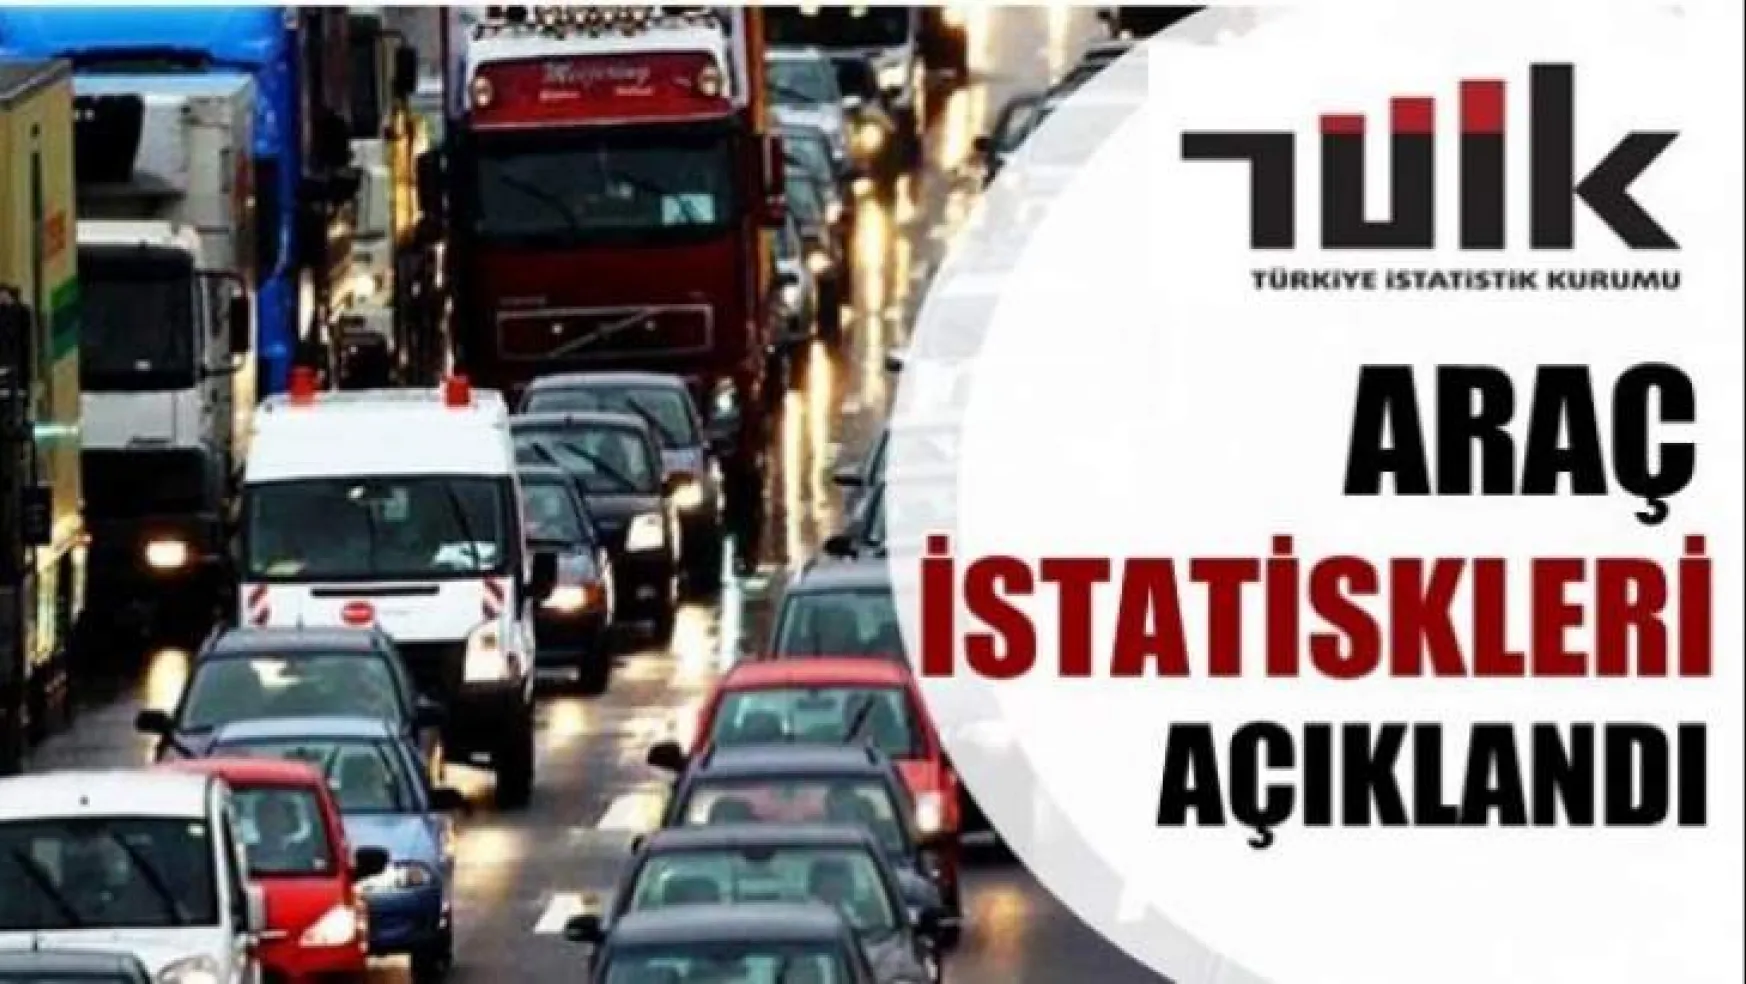 Malatya'da trafiğe kayıtlı araç sayısı Temmuz ayı sonu itibarıyla 175 187 oldu.